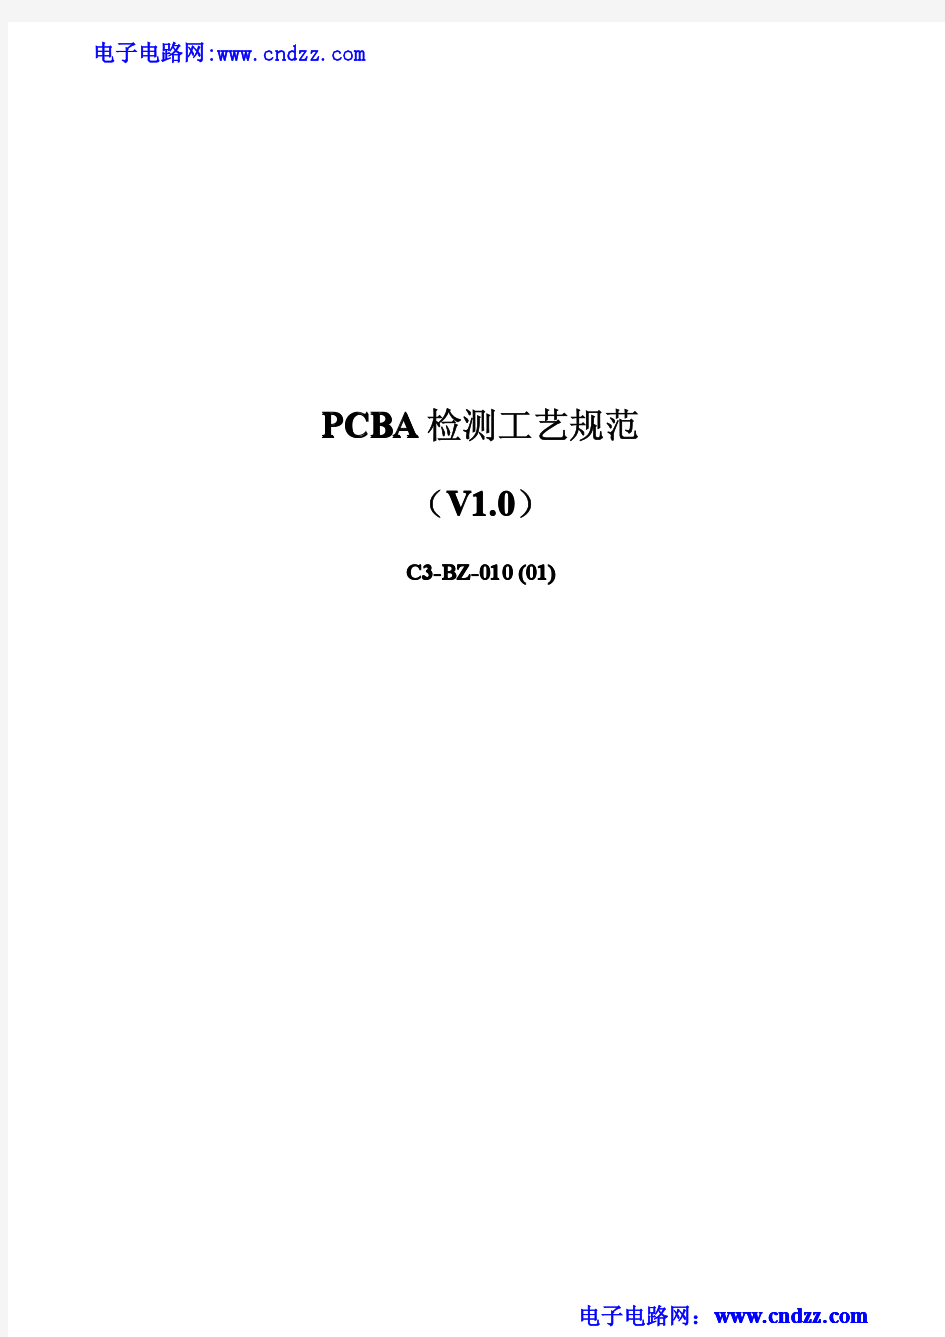 PCBA检测工艺规范